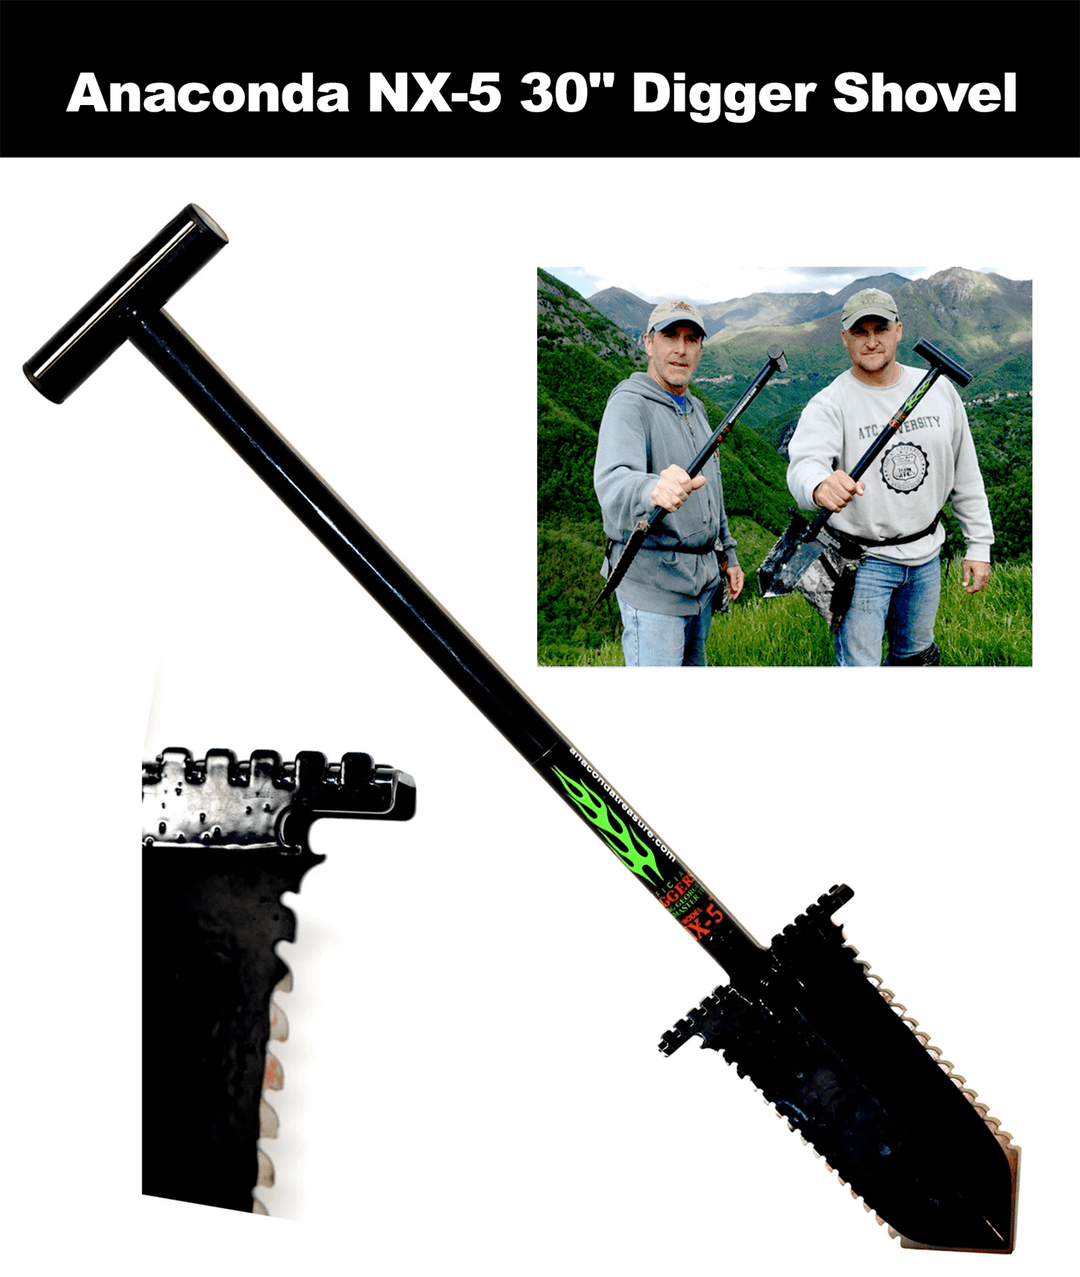 Anaconda NX5 30" inch Digger Shovel - Treasure Coast Metal Detectors